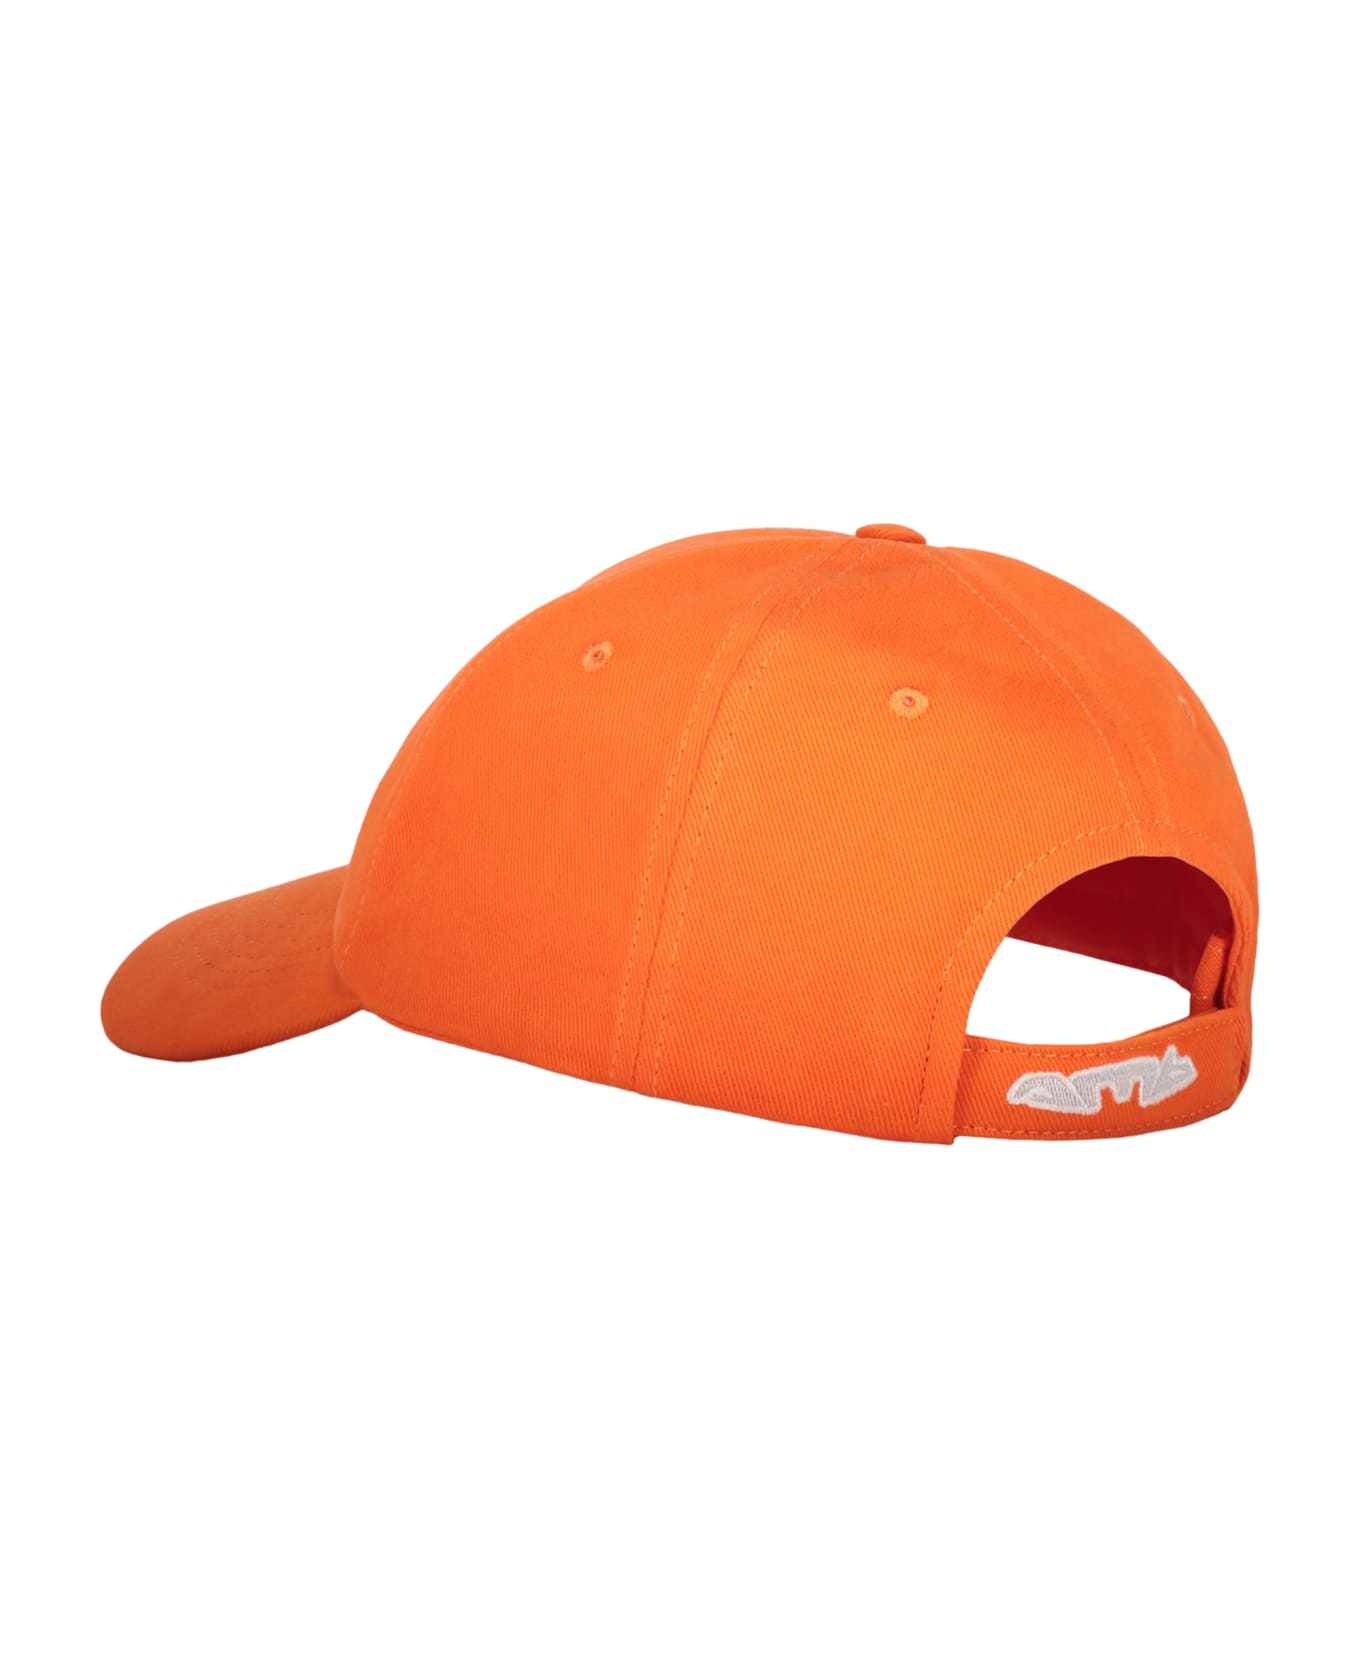 AMBUSH Baseball Cap - Orange 帽子